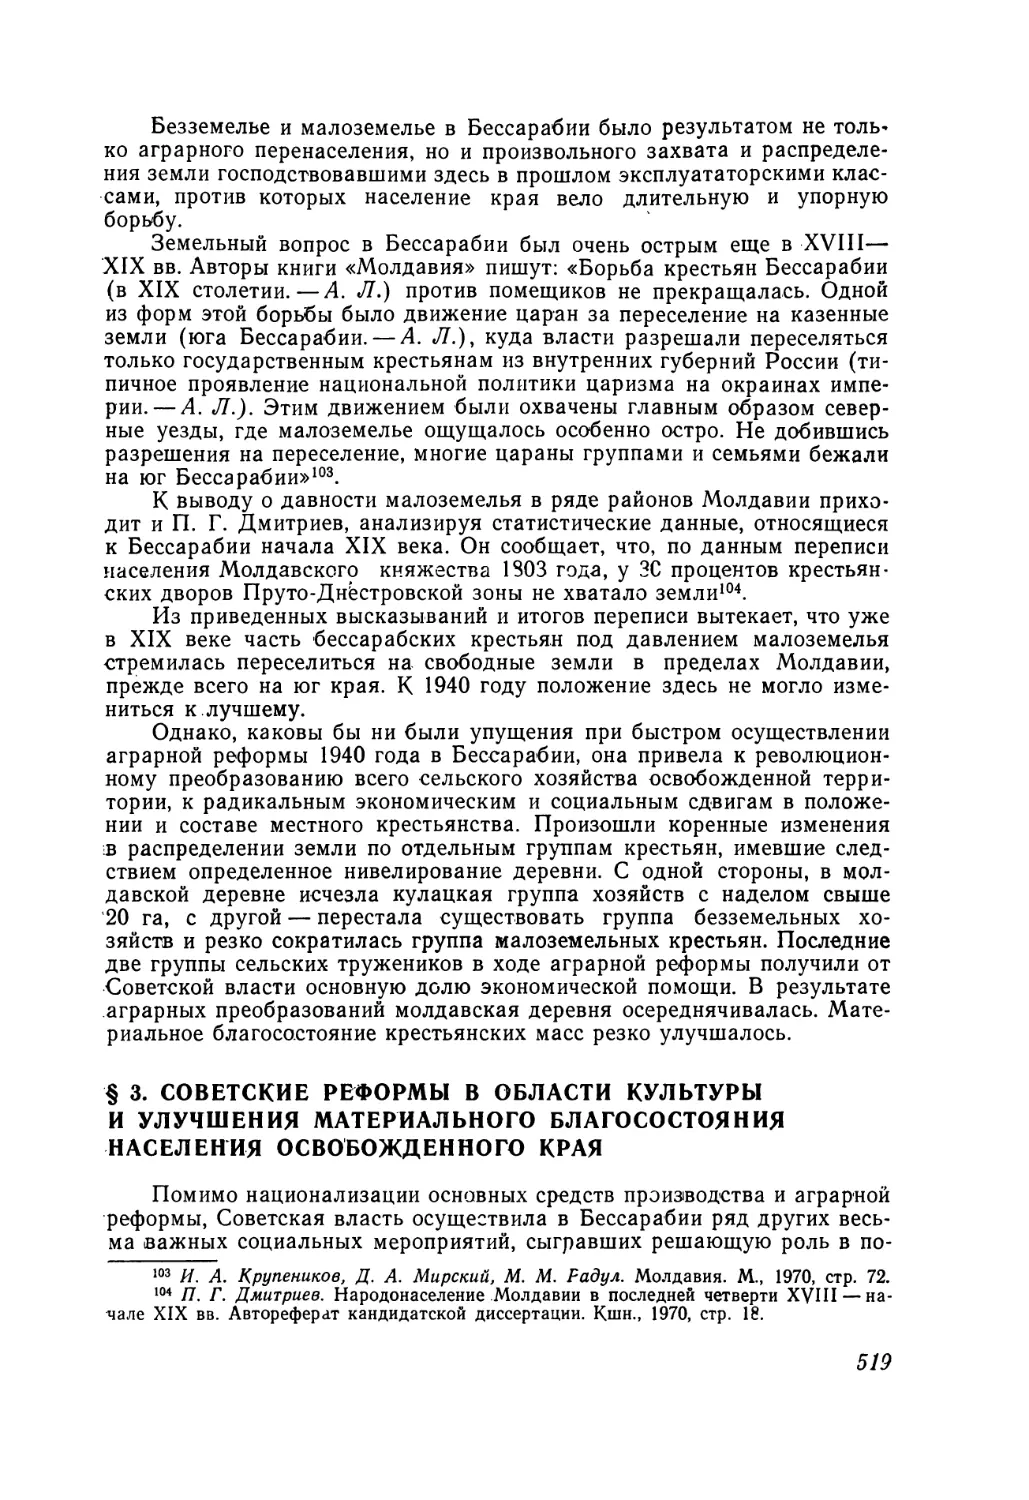 § 3. Советские реформы в области культуры и улучшения материального благосостояния населения освобожденного края